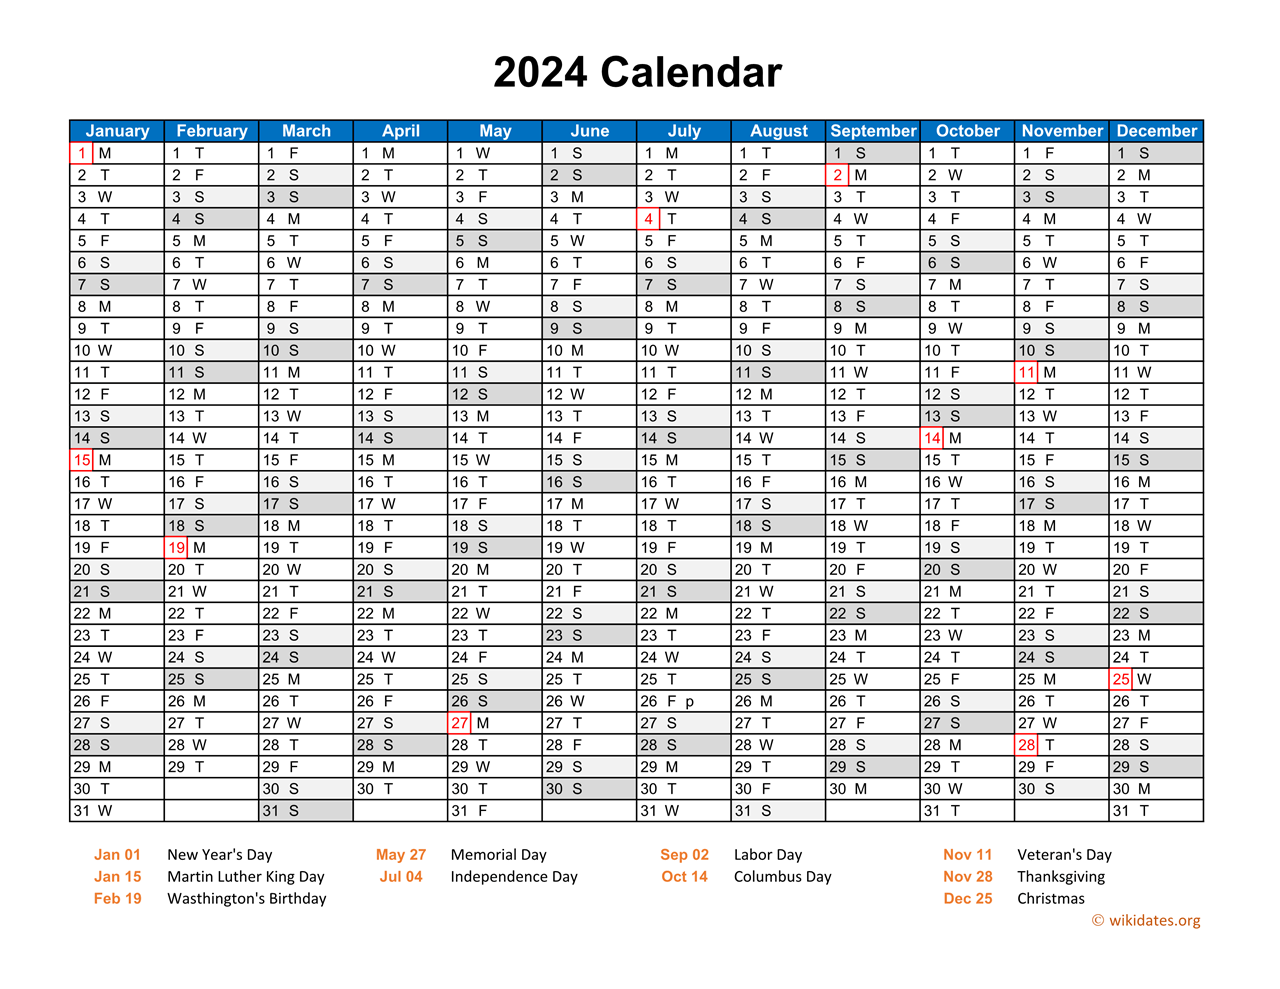 2024 calendar calendar quickly 2024 calendar free printable pdf